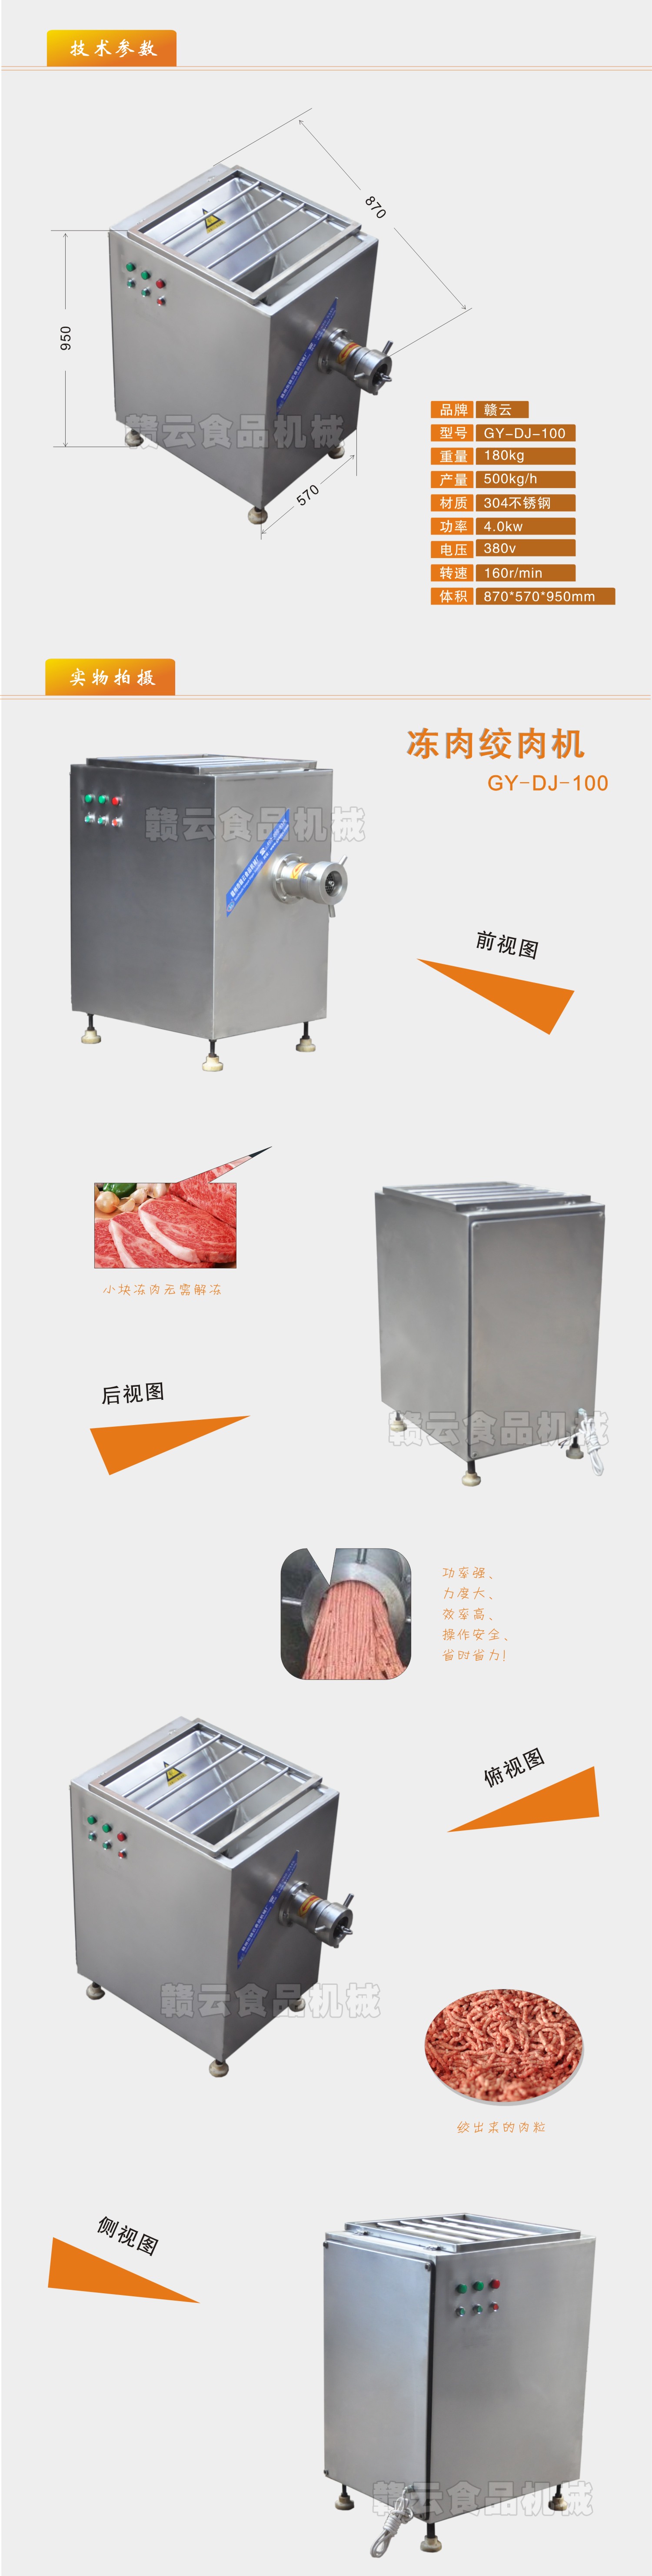 凍肉絞肉機100-2.jpg